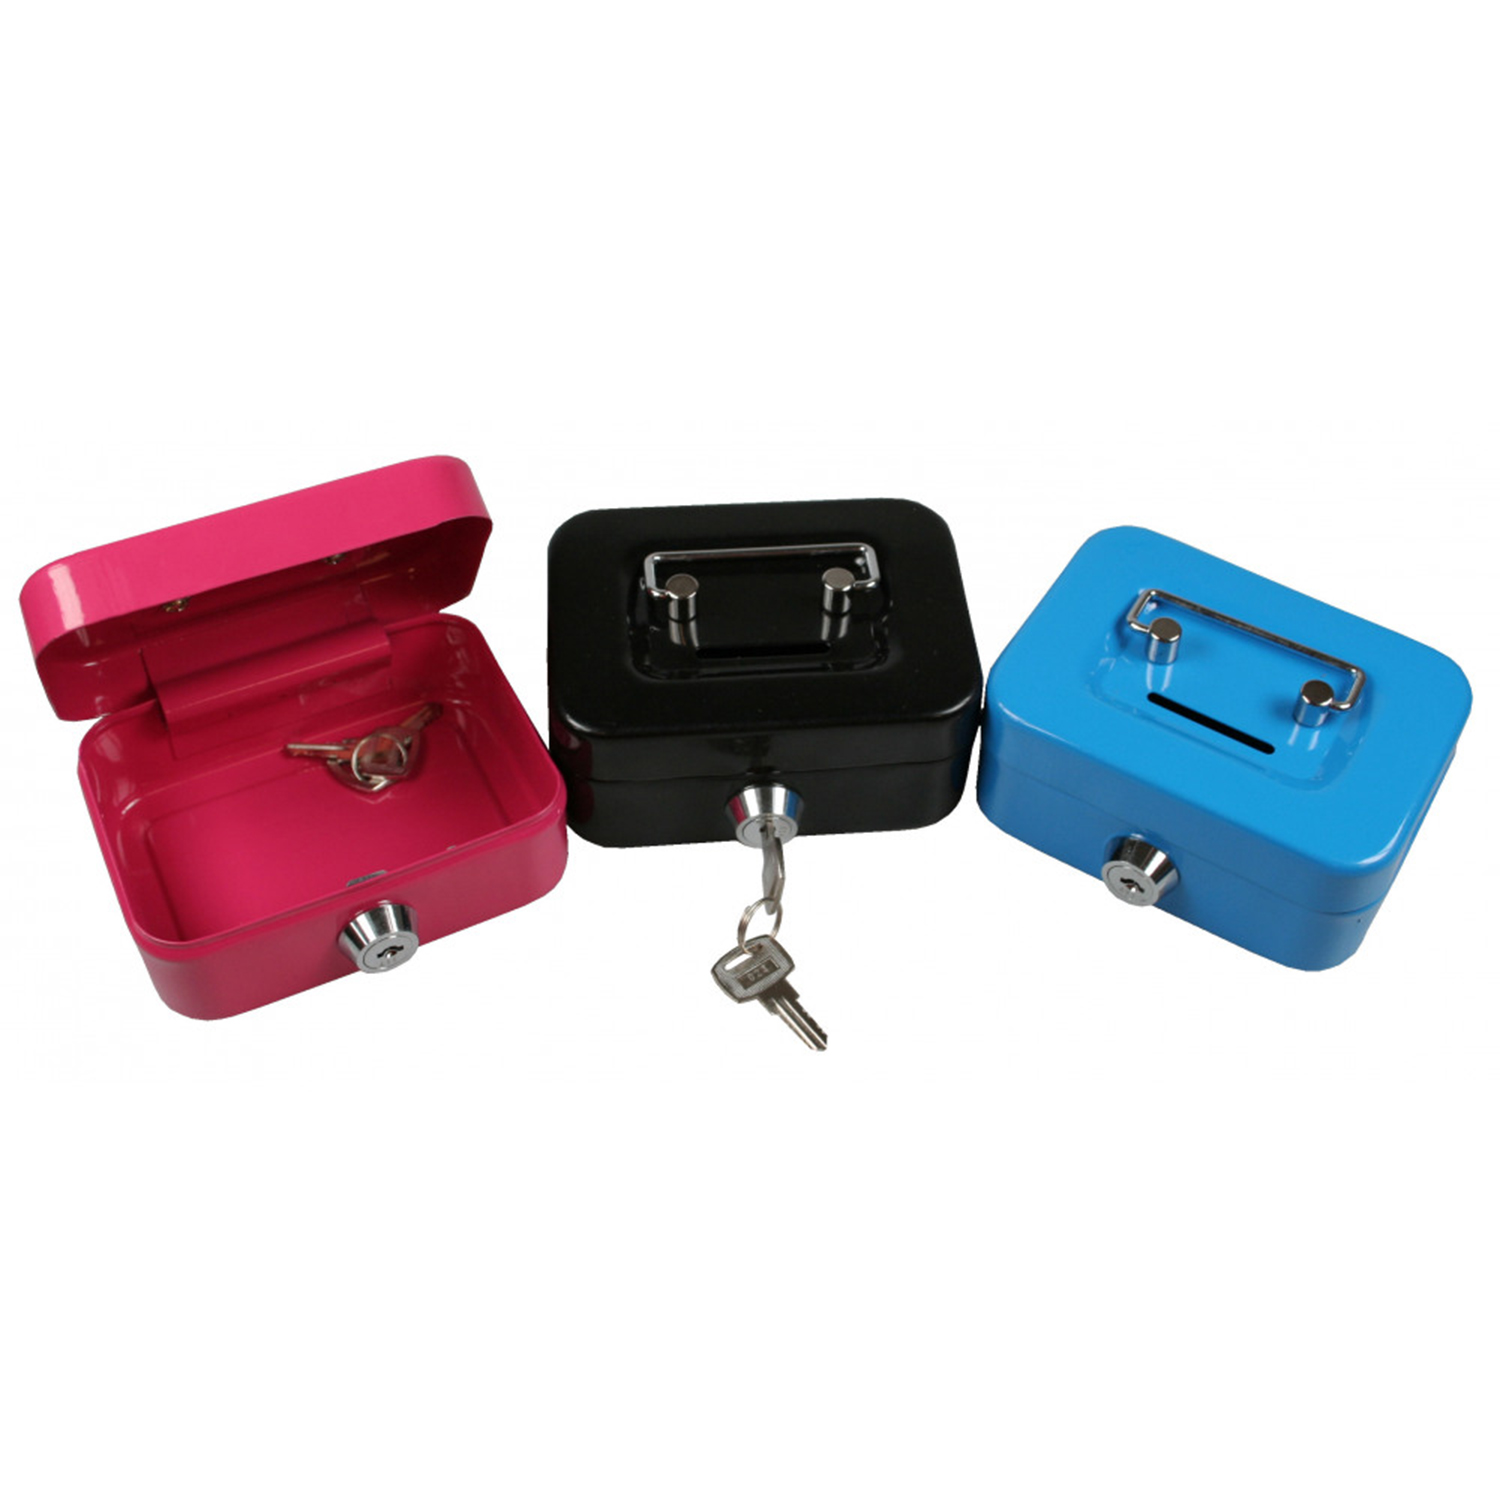 Kleine Geldkassette mit Schlüsselschloss Parrency tragbare Metall-Spardose mit doppelter Schicht und 2 Schlüsseln für Sicherheit 15,2 x 12,7 x 7,6 cm xs blau